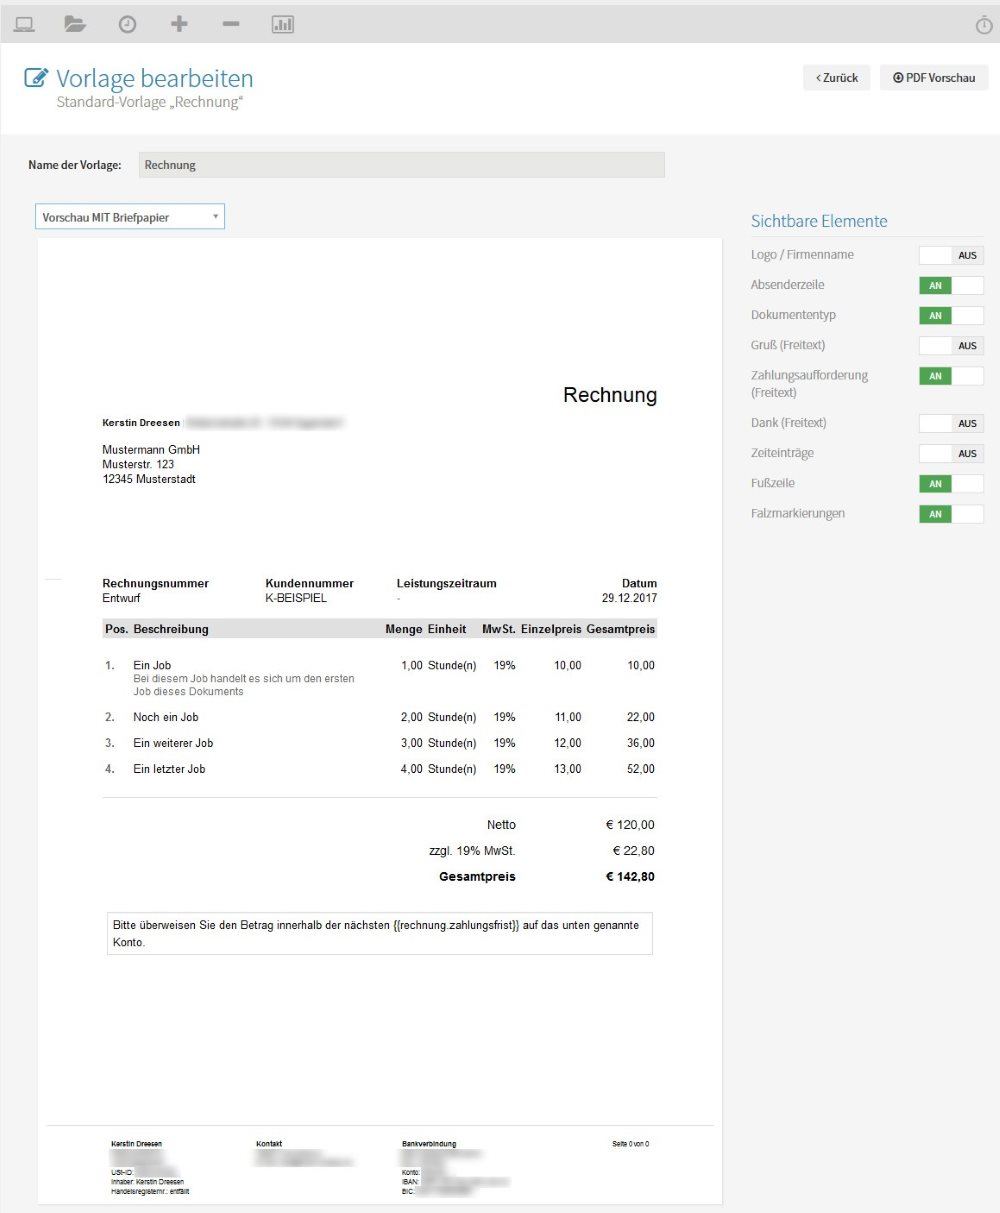 Rechnungsvorlagen von Papierkram im Screenhot